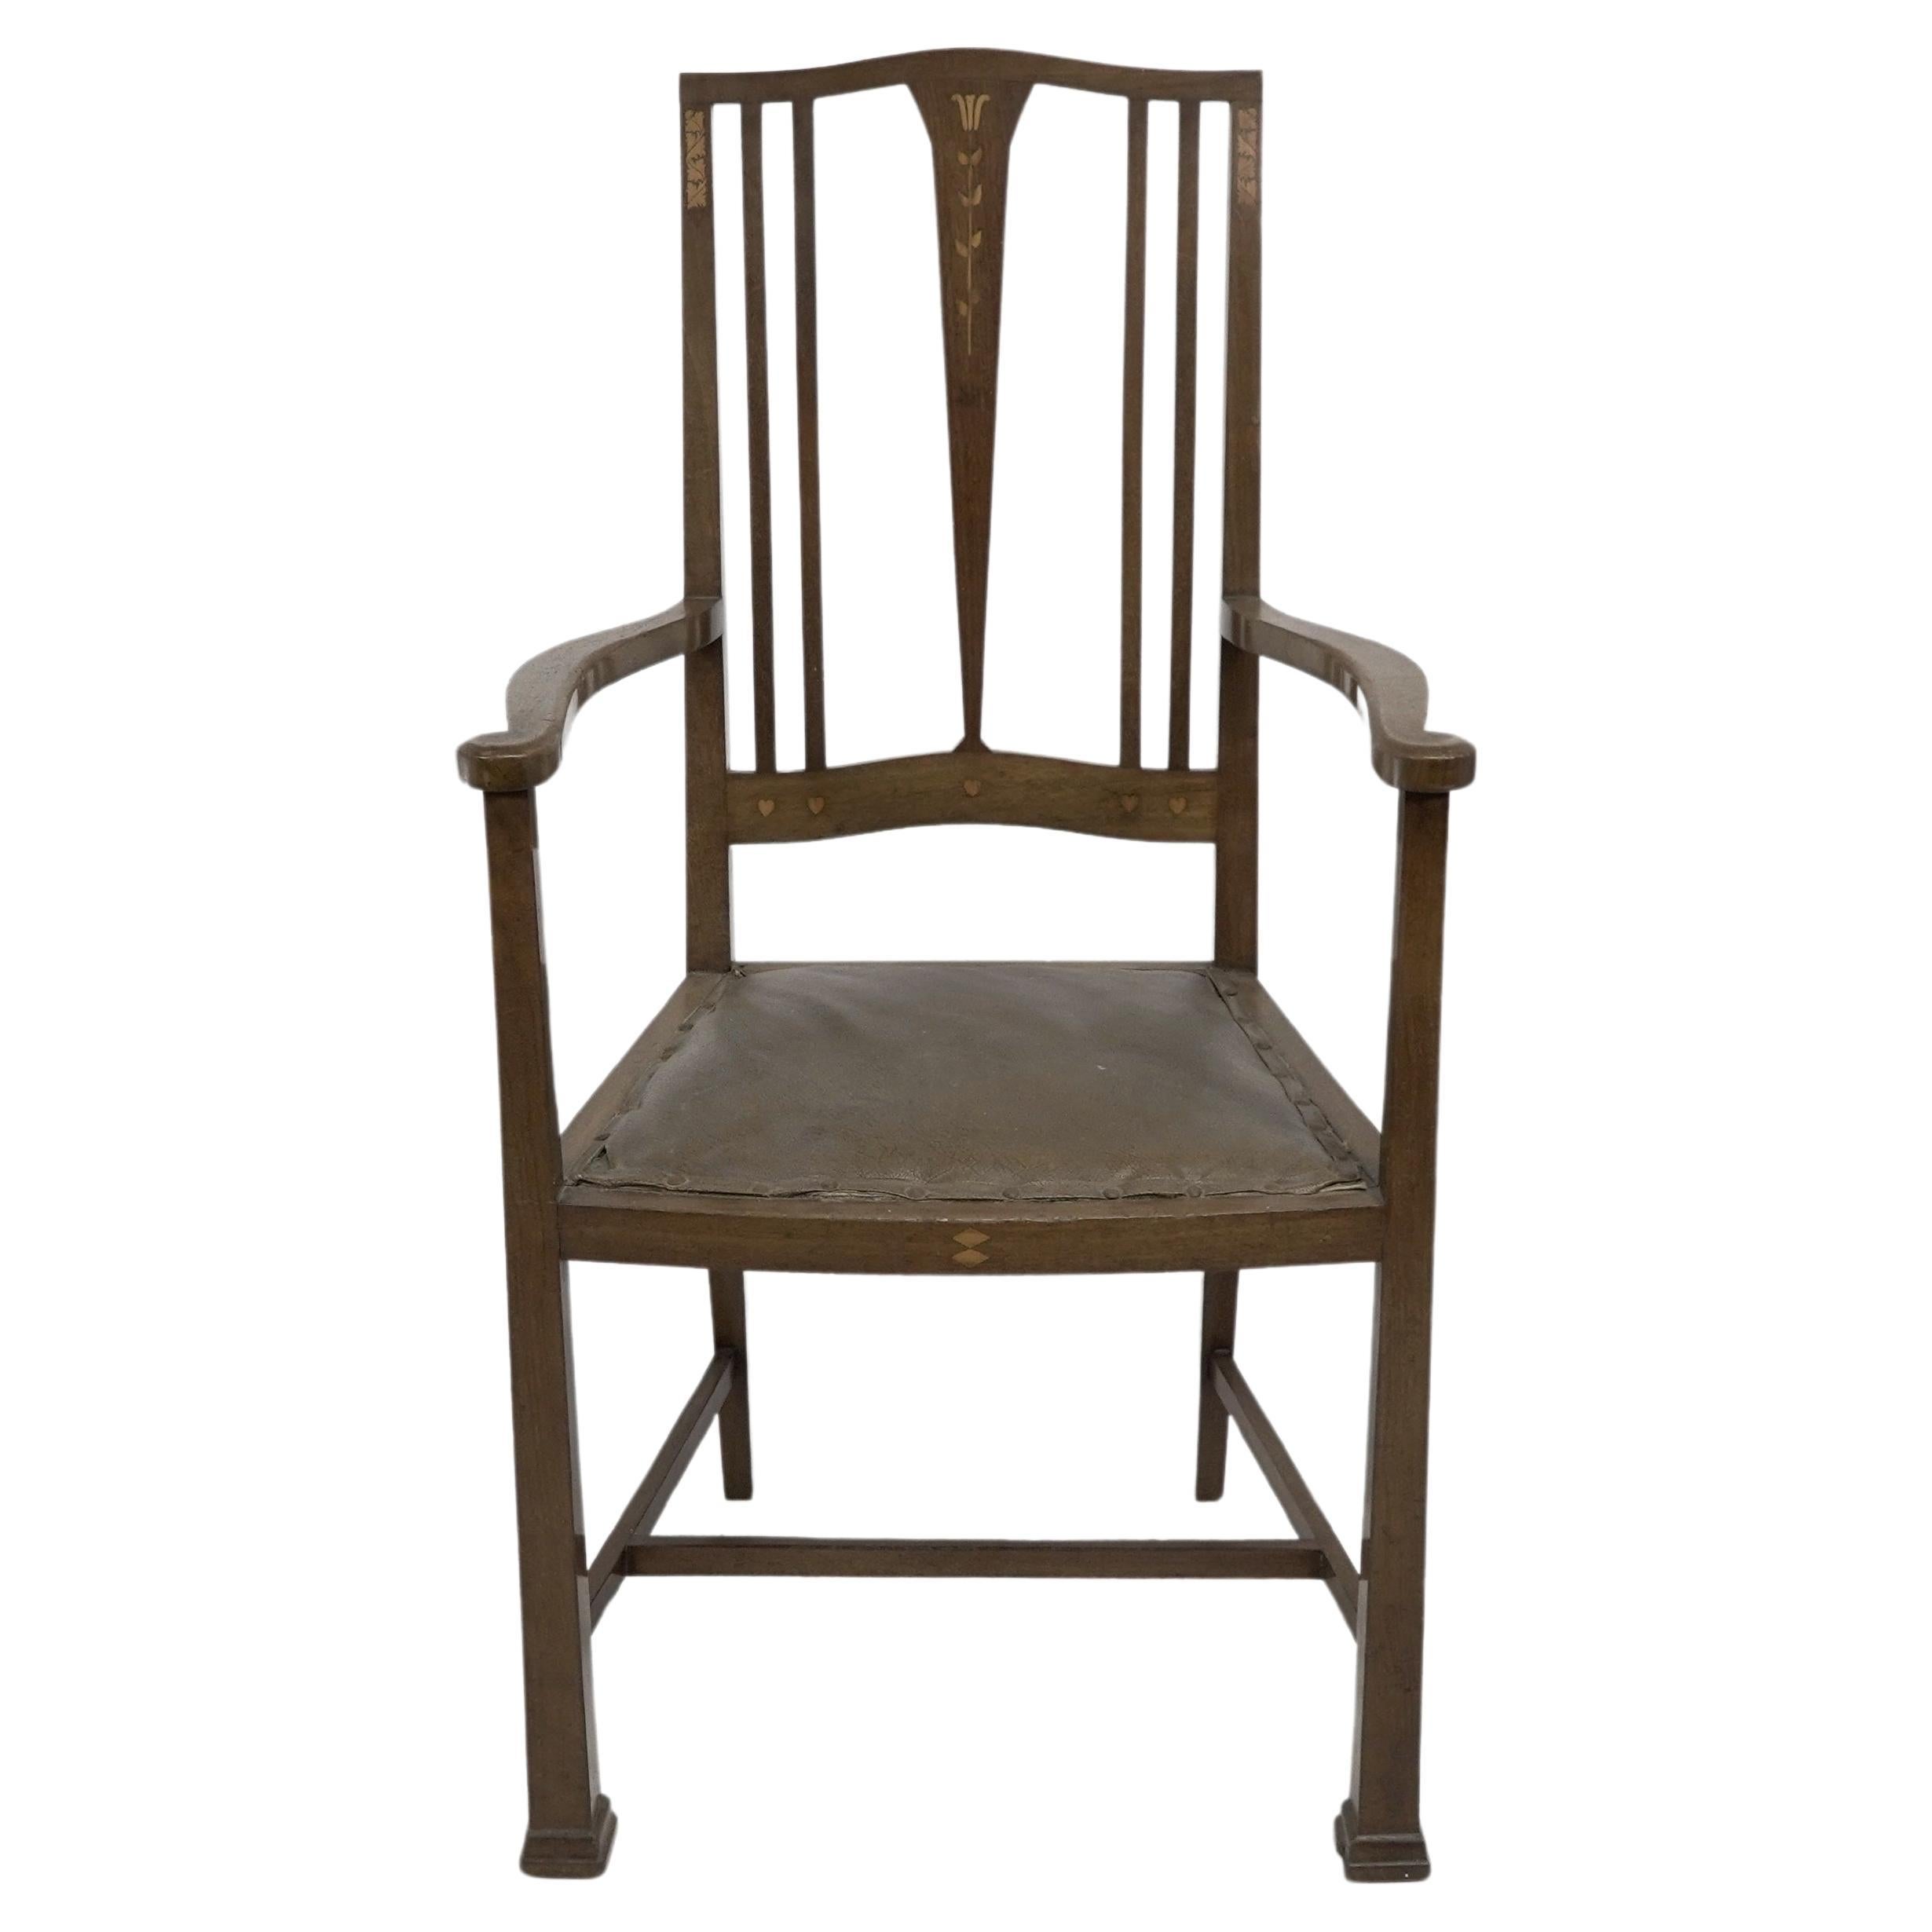 Liberty & Co a attribué un fauteuil en noyer de style Arts & Crafts, incrusté de petits coeurs et d'incrustations florales subtiles au dos et à l'avant.
